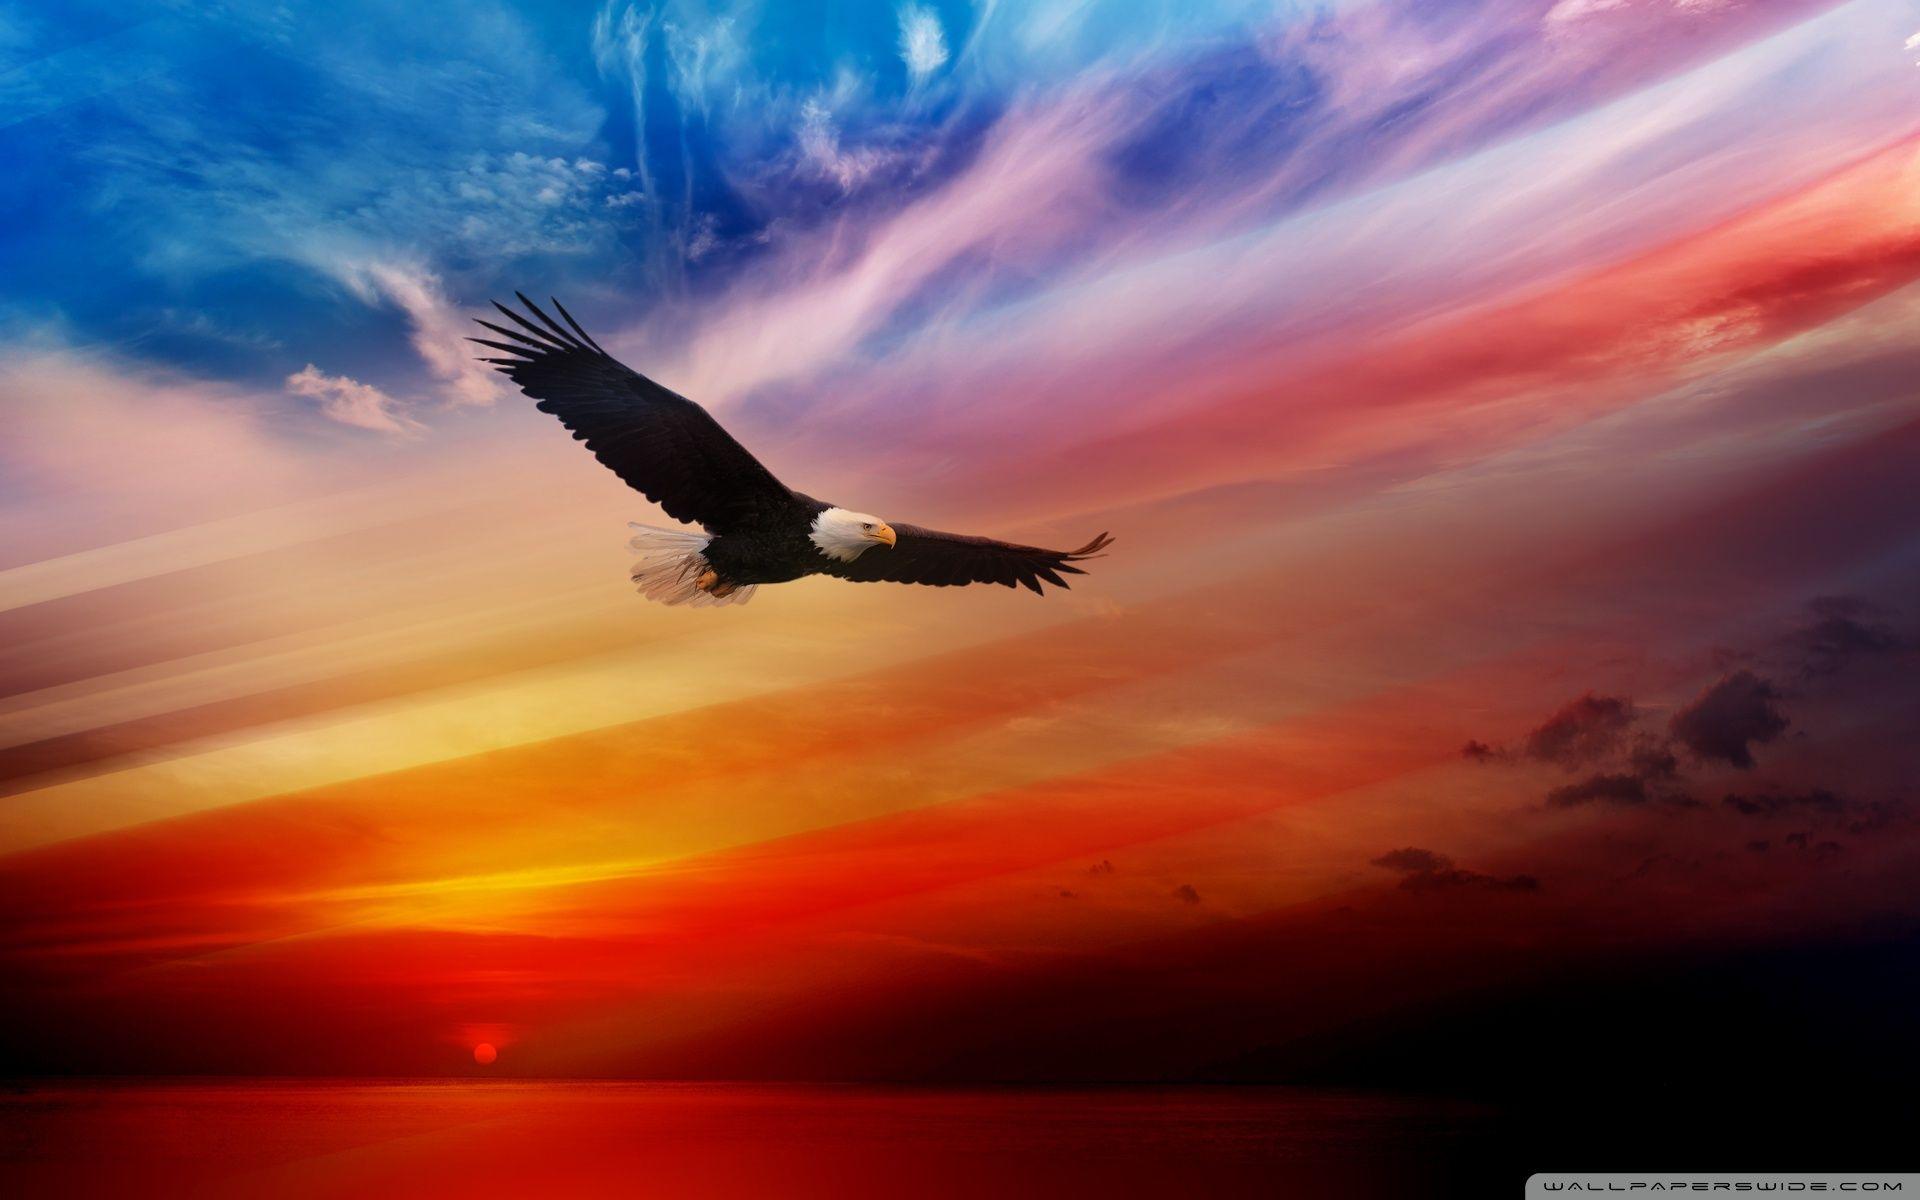 american flag sunset wallpaper